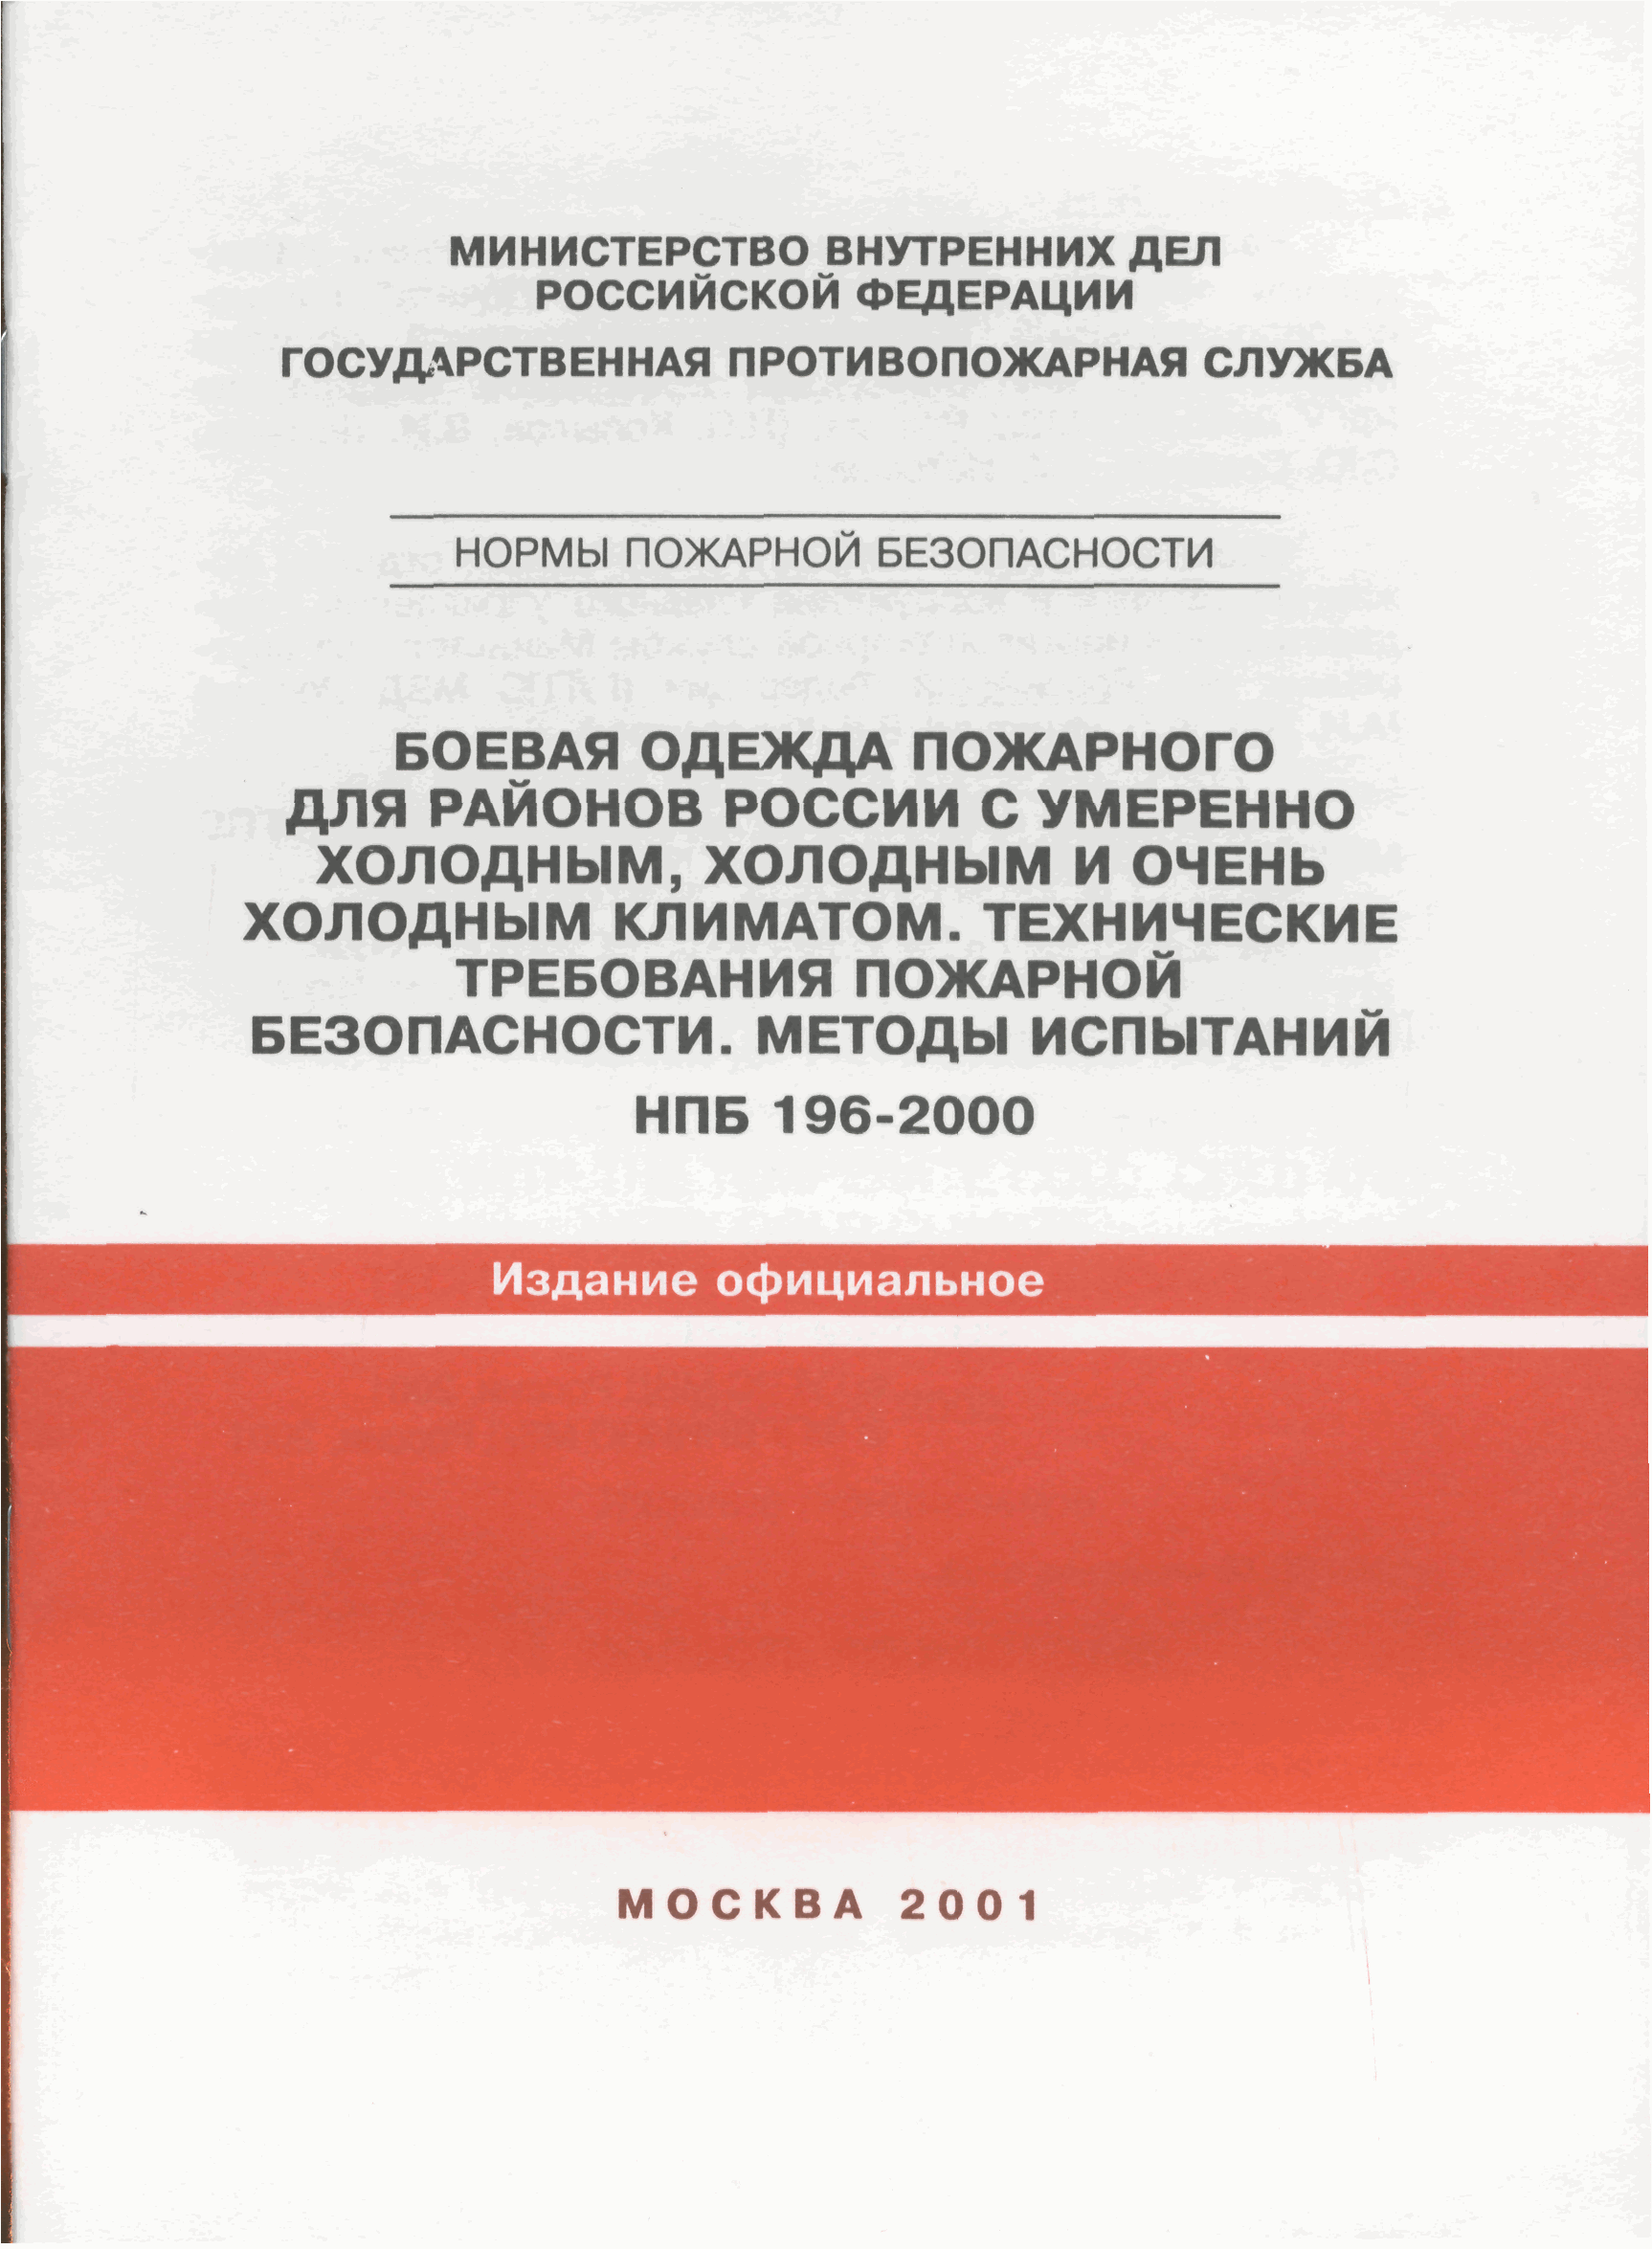 НПБ 196-2000